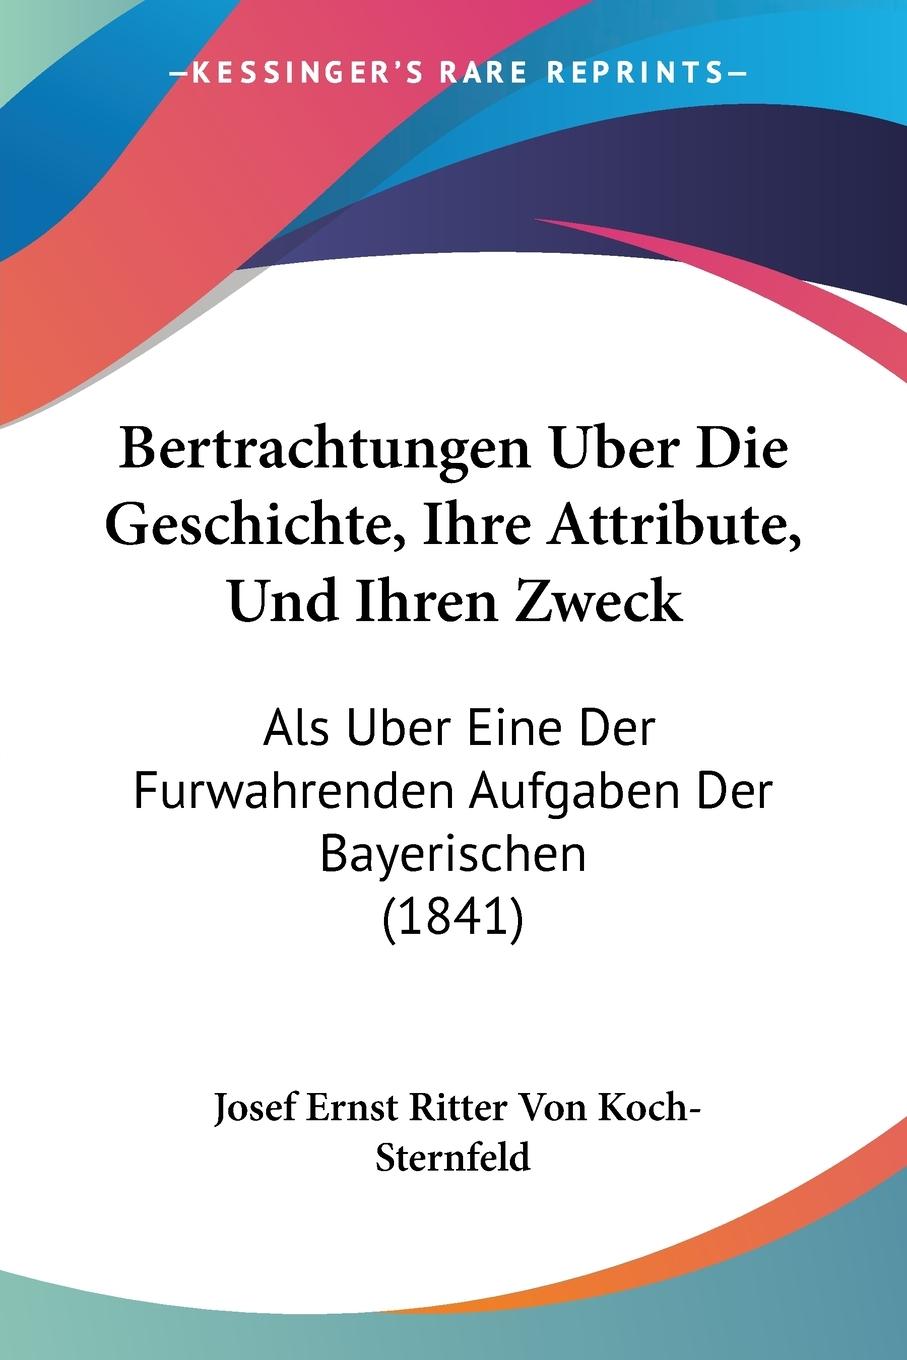 Bertrachtungen Uber Die Geschichte, Ihre Attribute, Und Ihren Zweck - Koch-Sternfeld, Josef Ernst Ritter Von